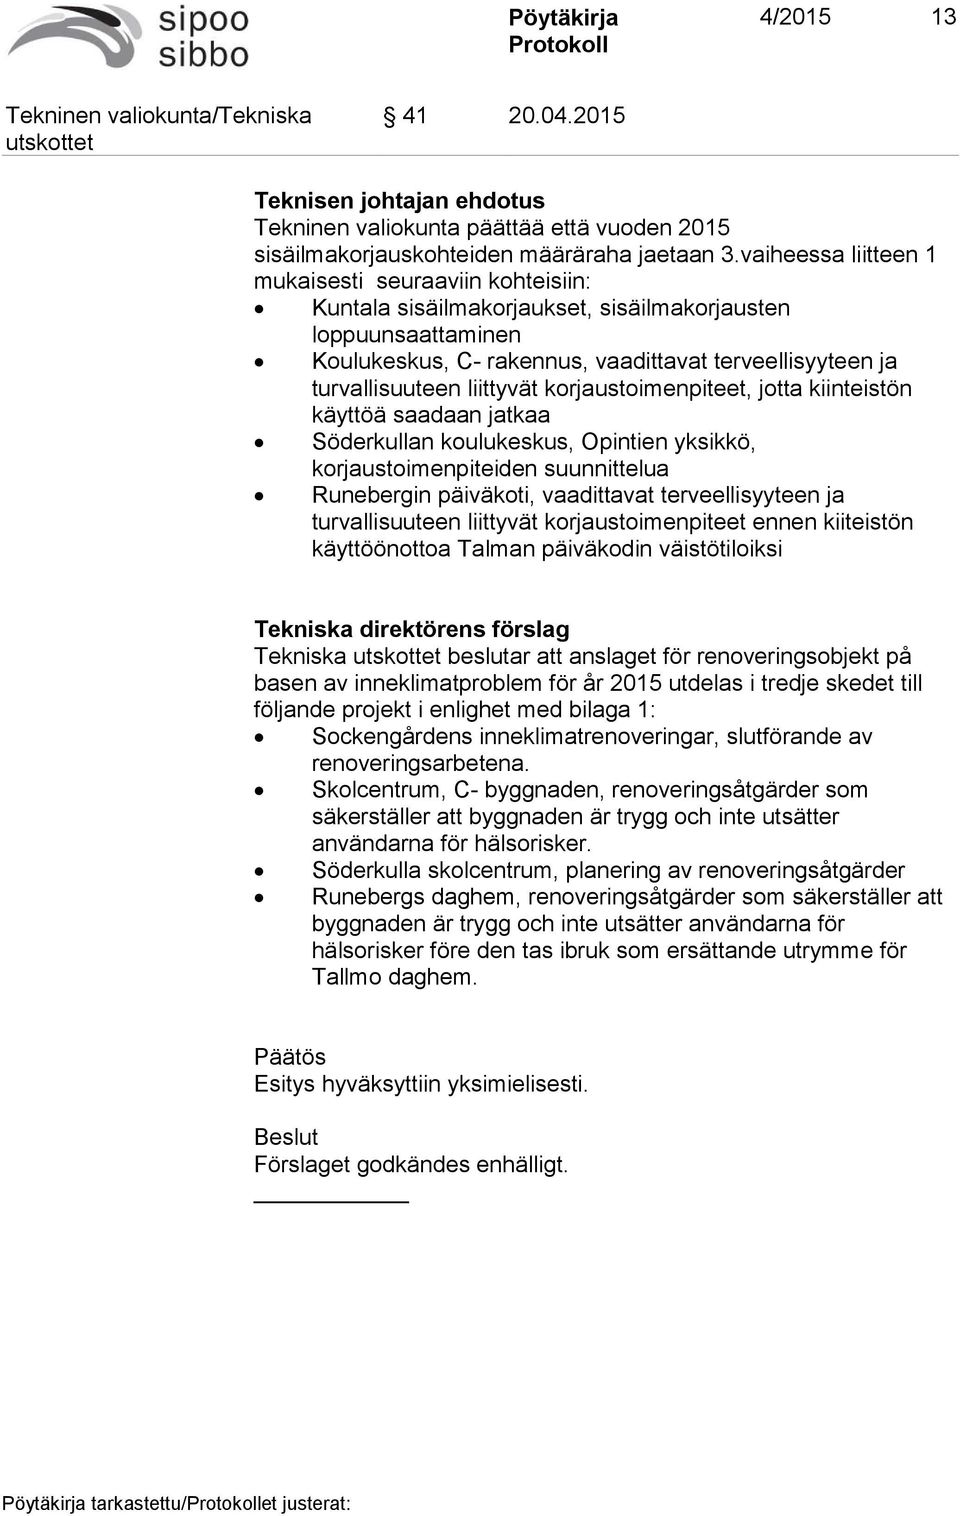 liittyvät korjaustoimenpiteet, jotta kiinteistön käyttöä saadaan jatkaa Söderkullan koulukeskus, Opintien yksikkö, korjaustoimenpiteiden suunnittelua Runebergin päiväkoti, vaadittavat